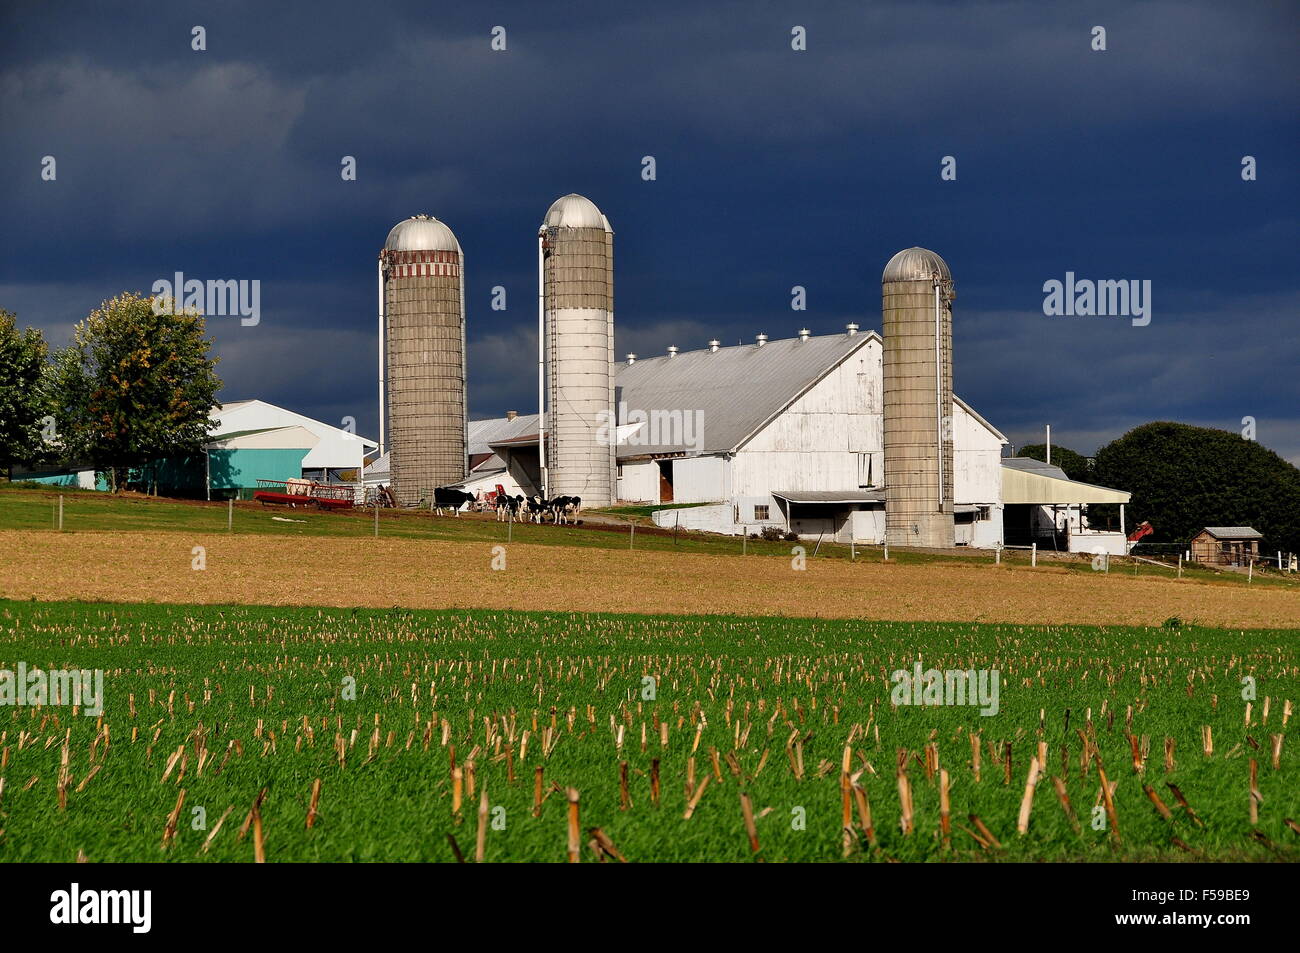 Lancaster County, Pennsylvania: le mucche al pascolo accanto ad un fienile Amish con tre silos alti Foto Stock